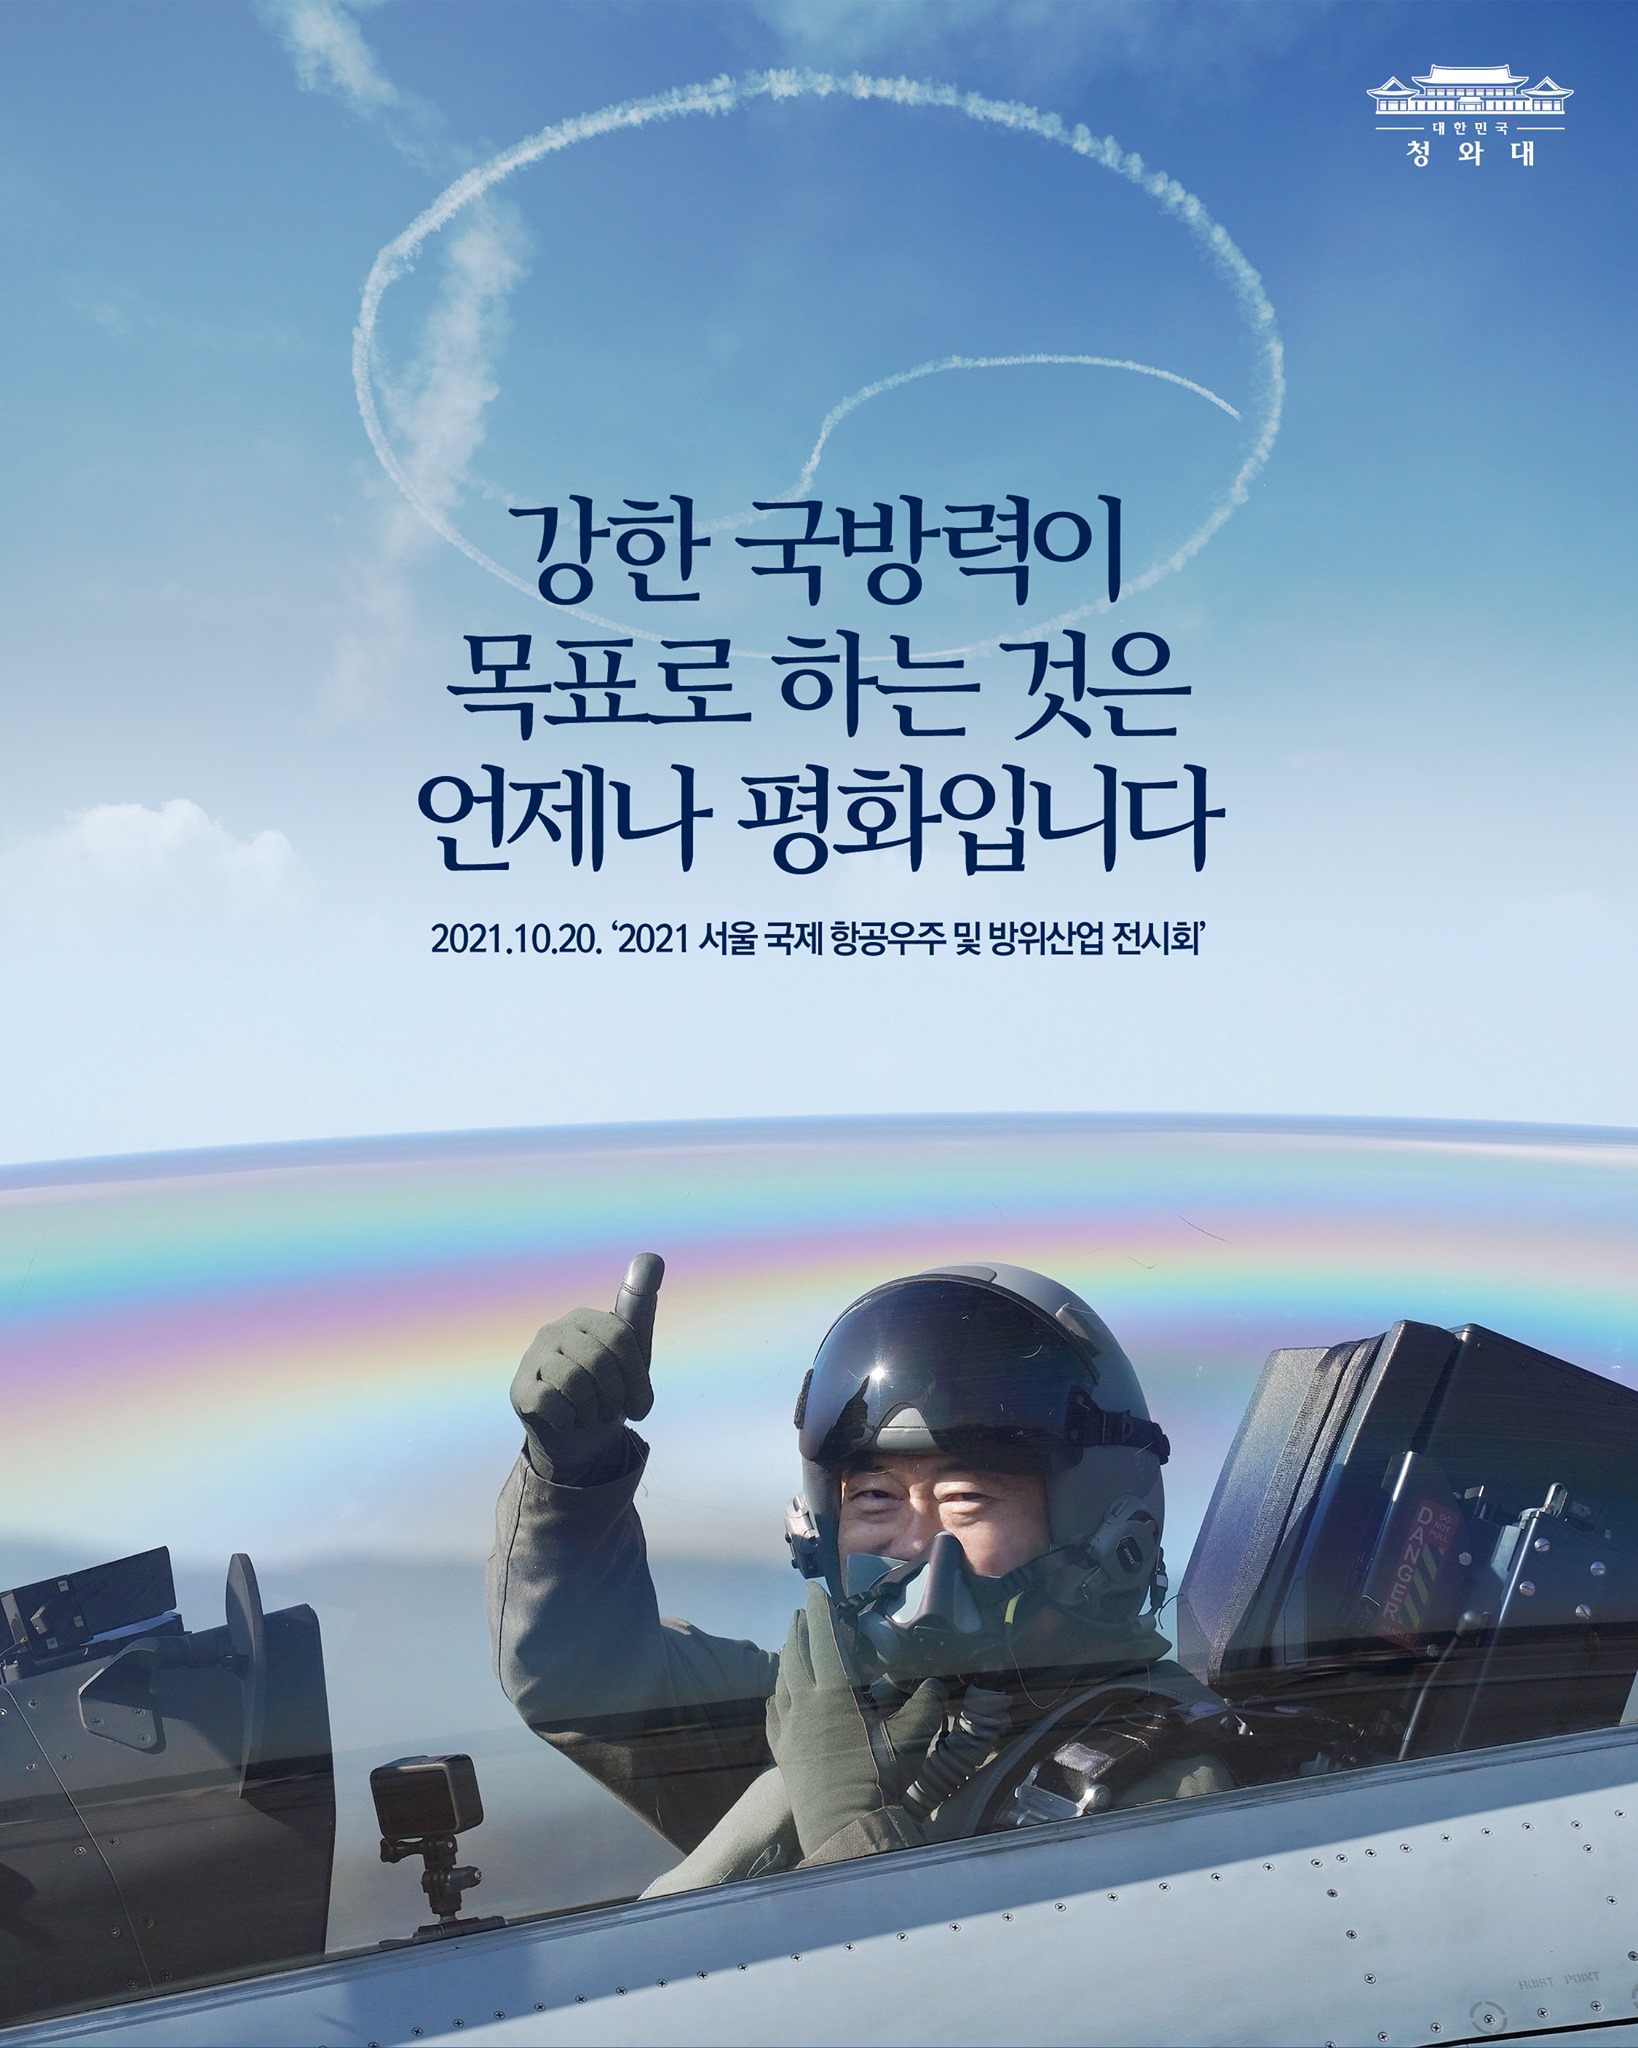 강한 국방력이
목표로 하는 것은
언제나 평화입니다

2021. 10. 20. '2021 서울 국제 항공우주 및 방위산업 전시회'